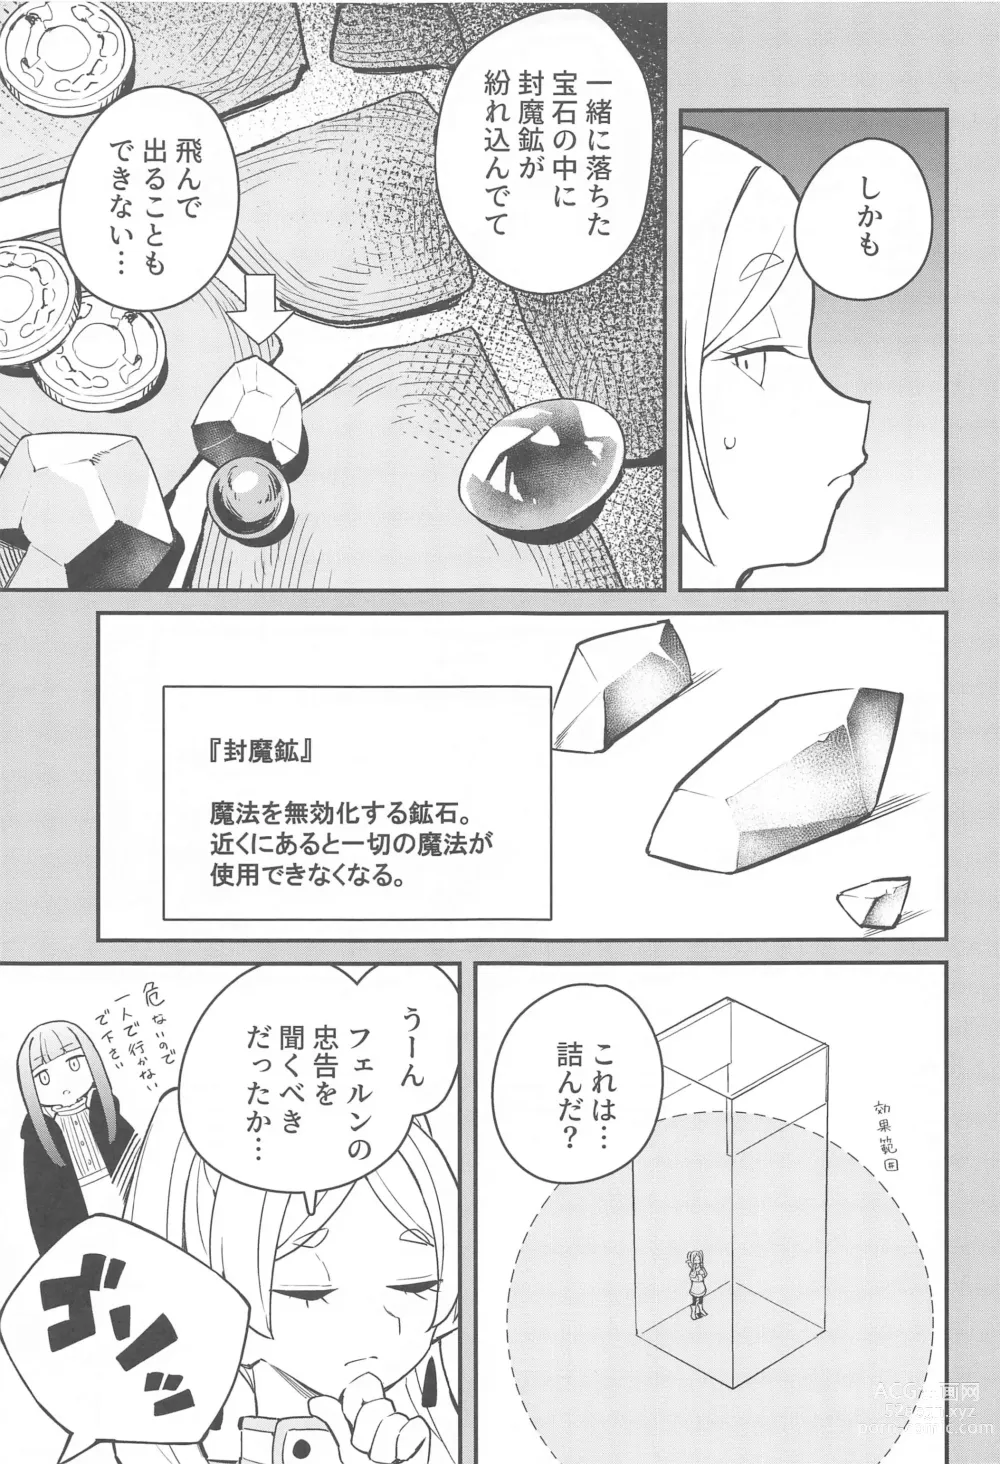 Page 4 of doujinshi Otoshiana kara no Dasshutsu